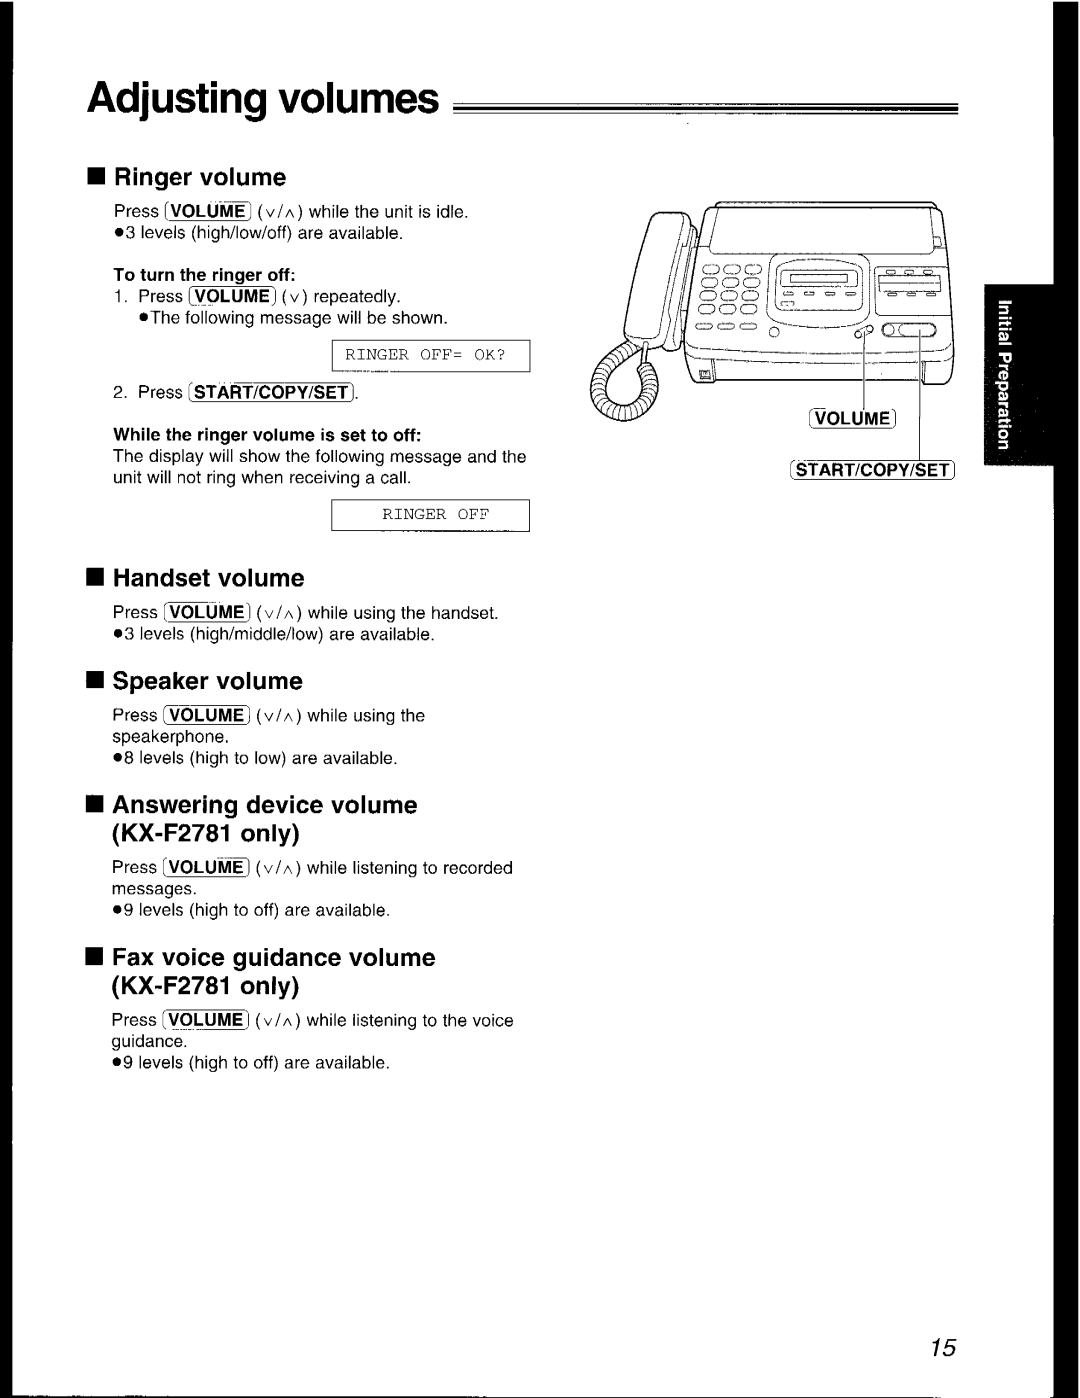 Panasonic KX-F2581AL, KX-F2781AL manual 